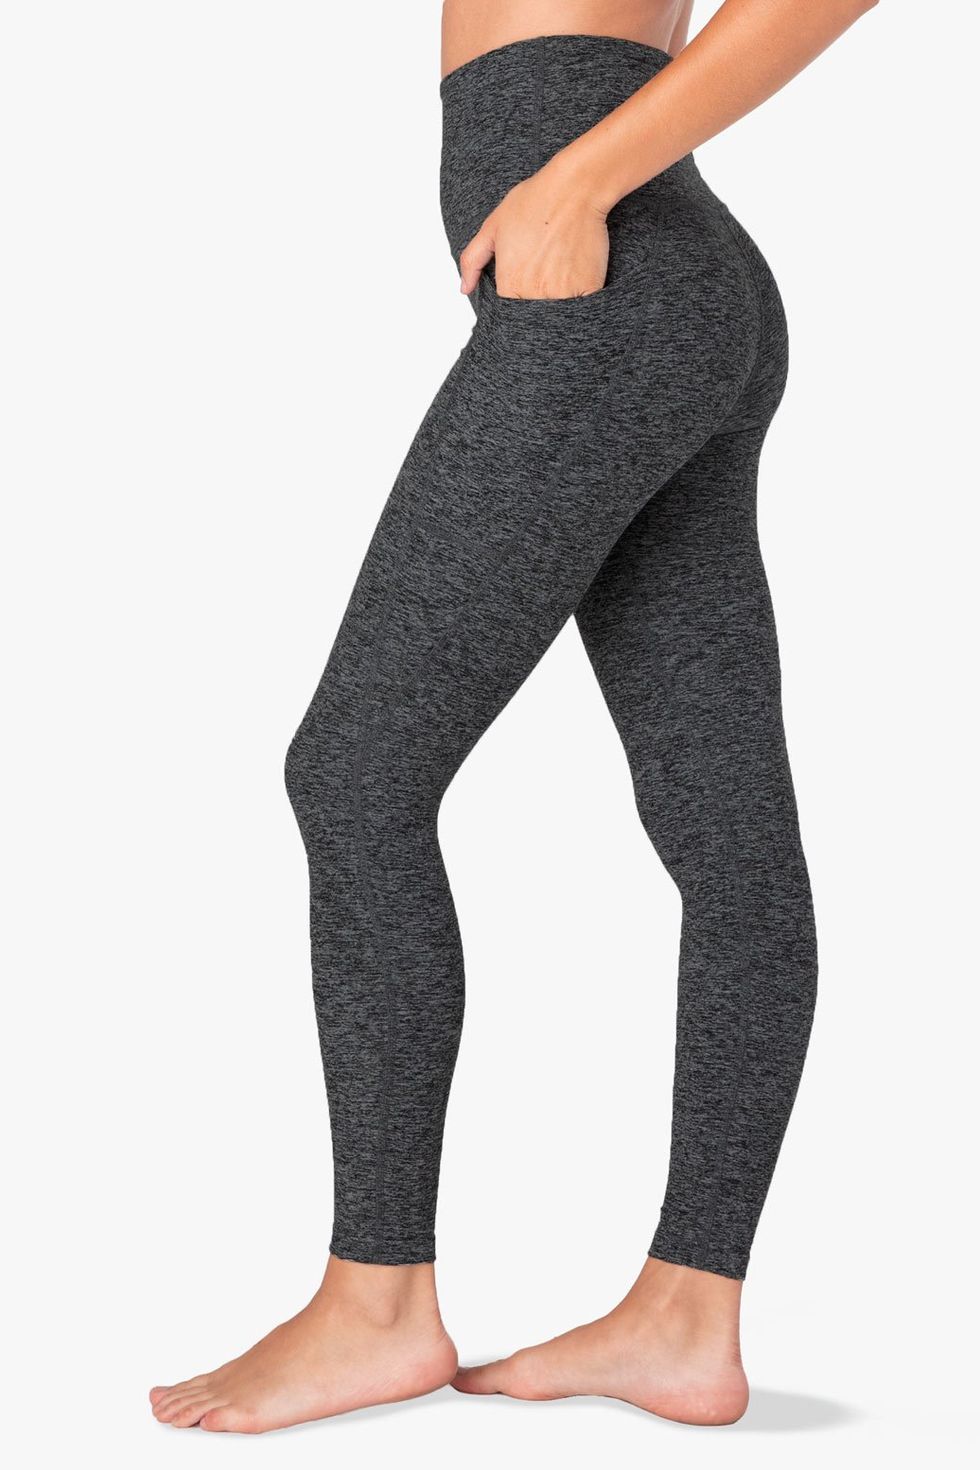 Beyond Yoga Polka Dots Black Leggings Size XS - 56% off